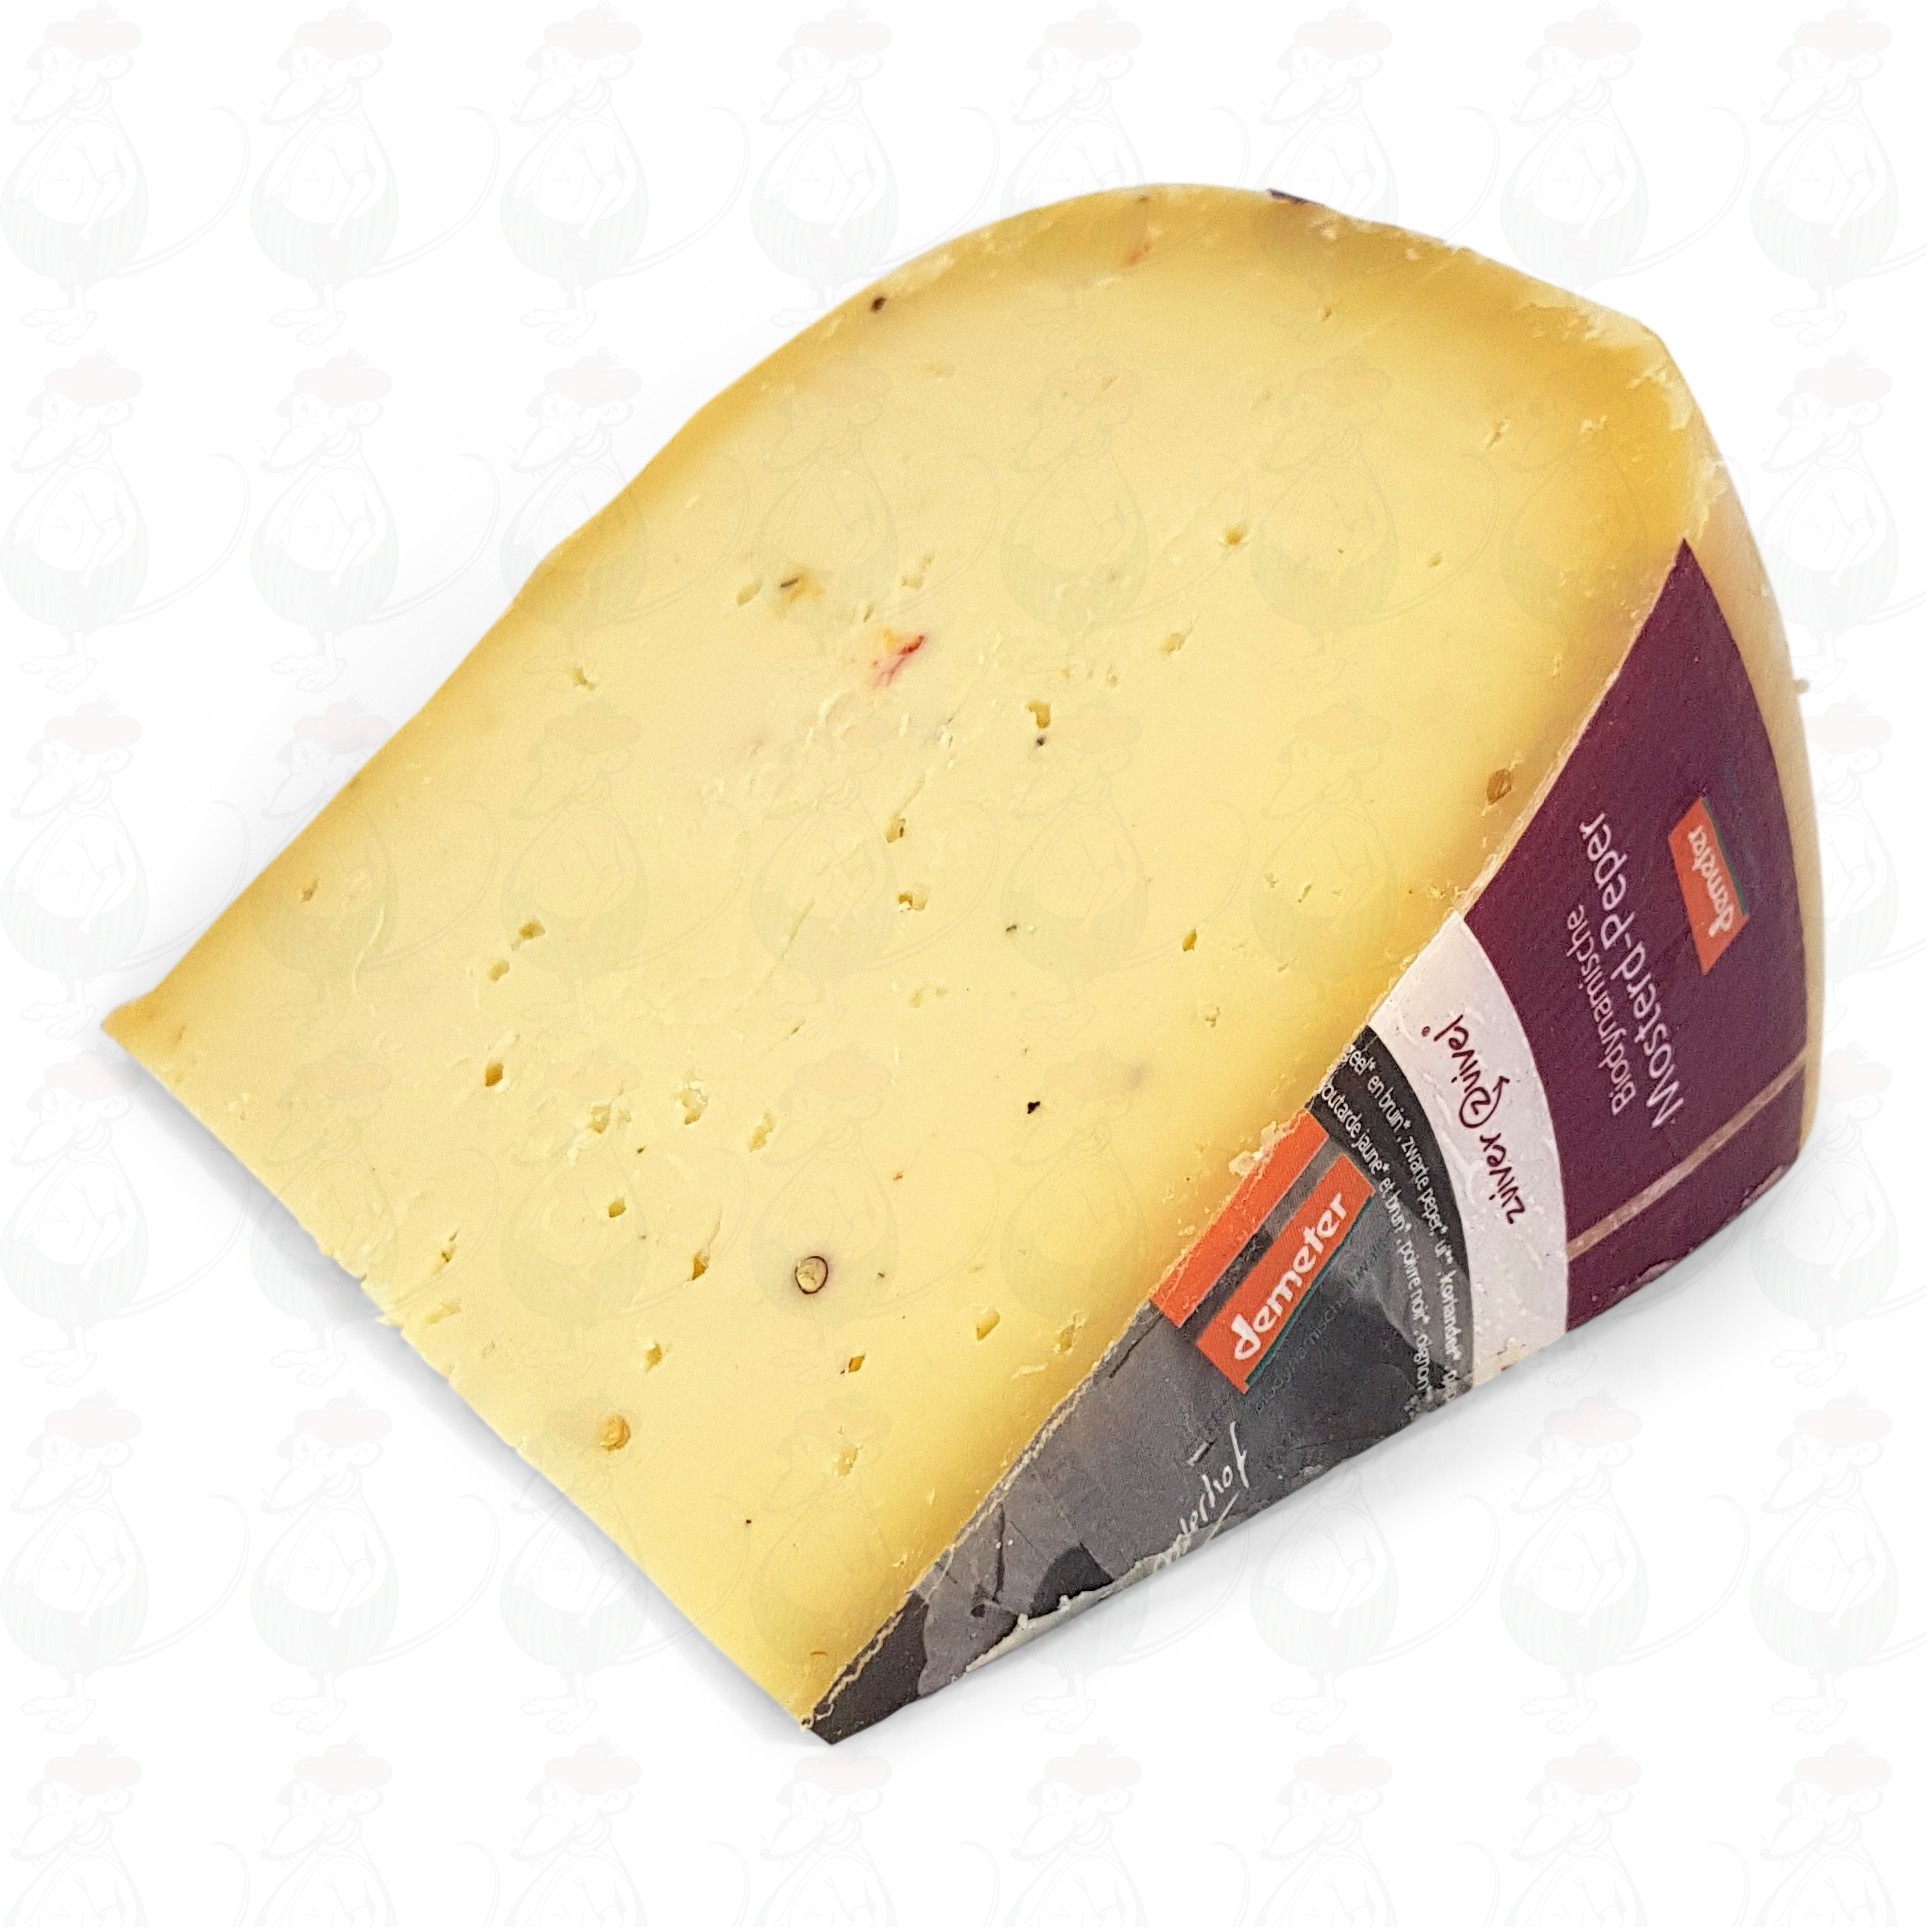 Gouda Cheese Shop - Dutch Cheese